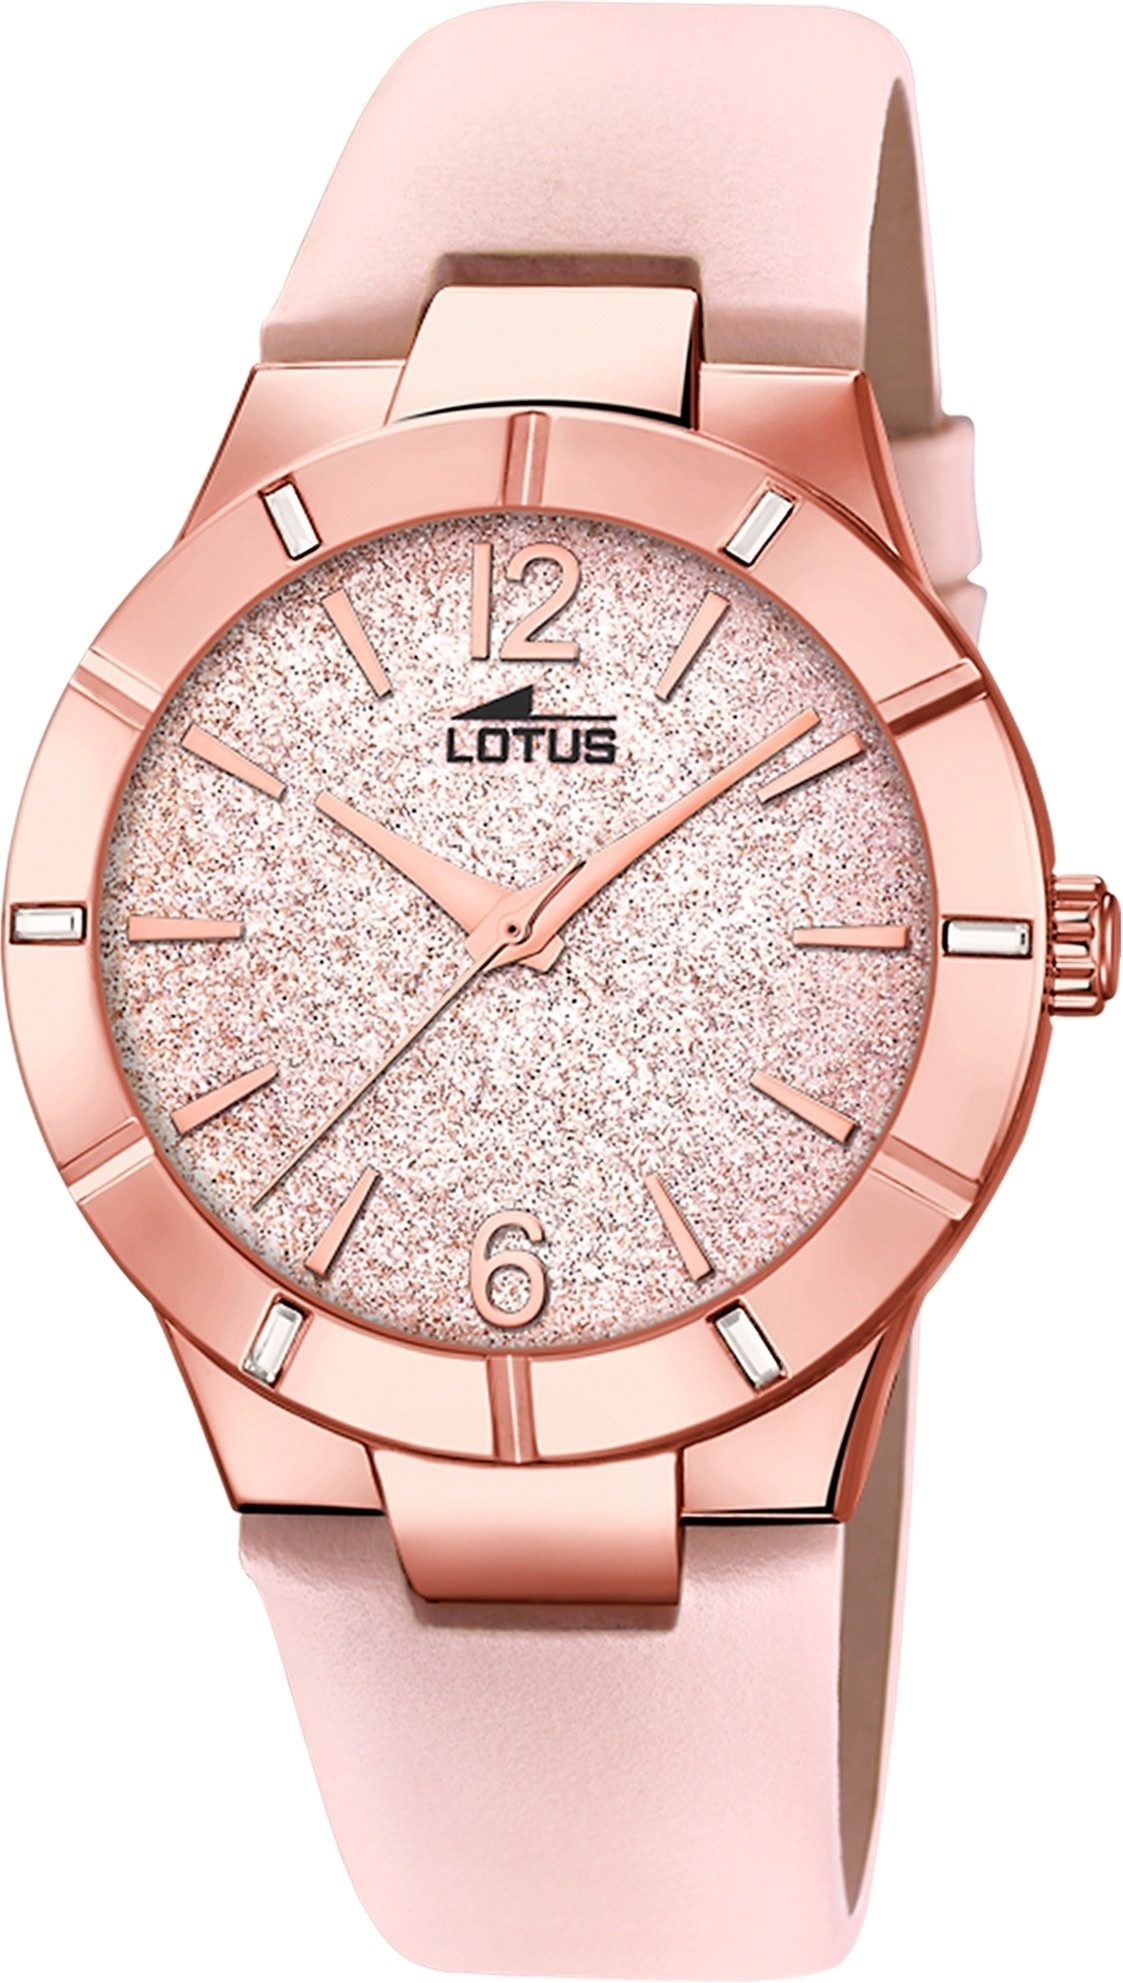 Lotus Quarzuhr Lotus Damenuhr Trendy Armbanduhr Leder, (Analoguhr), Damen Armbanduhr rund, mittel (ca. 36mm), Edelstahl, Luxus